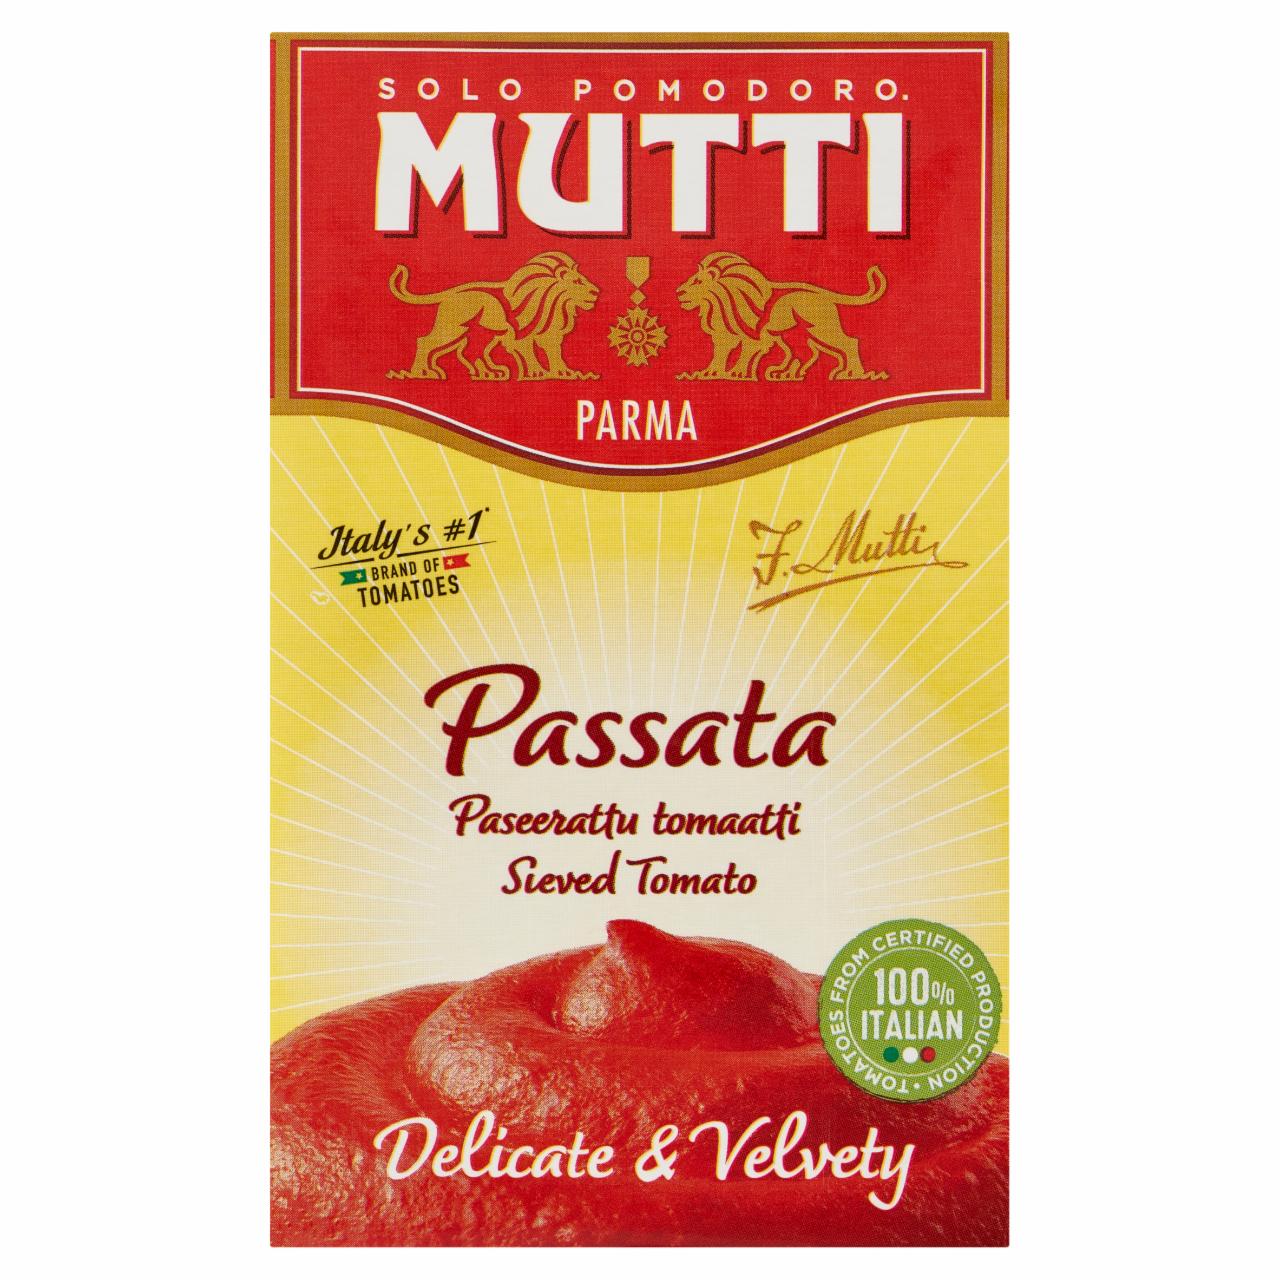 Fotografie - Passata rajčatové pyré Sweet & Velvety Mutti